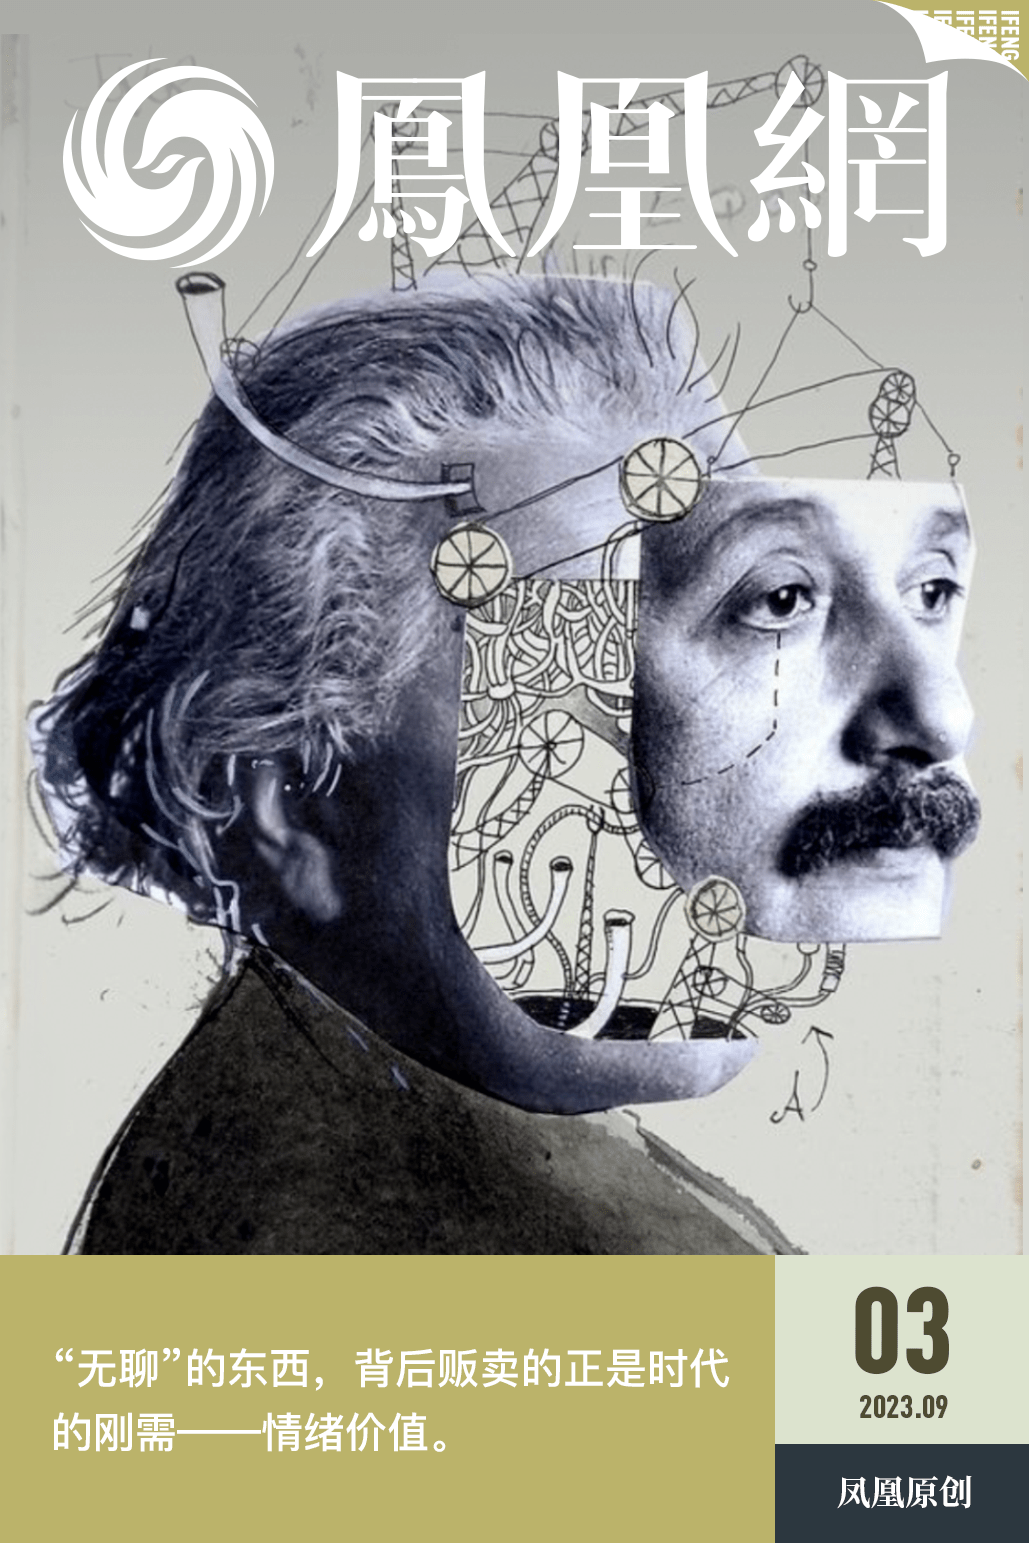 “爱因斯坦的脑子”，正在被年轻人疯狂抢购